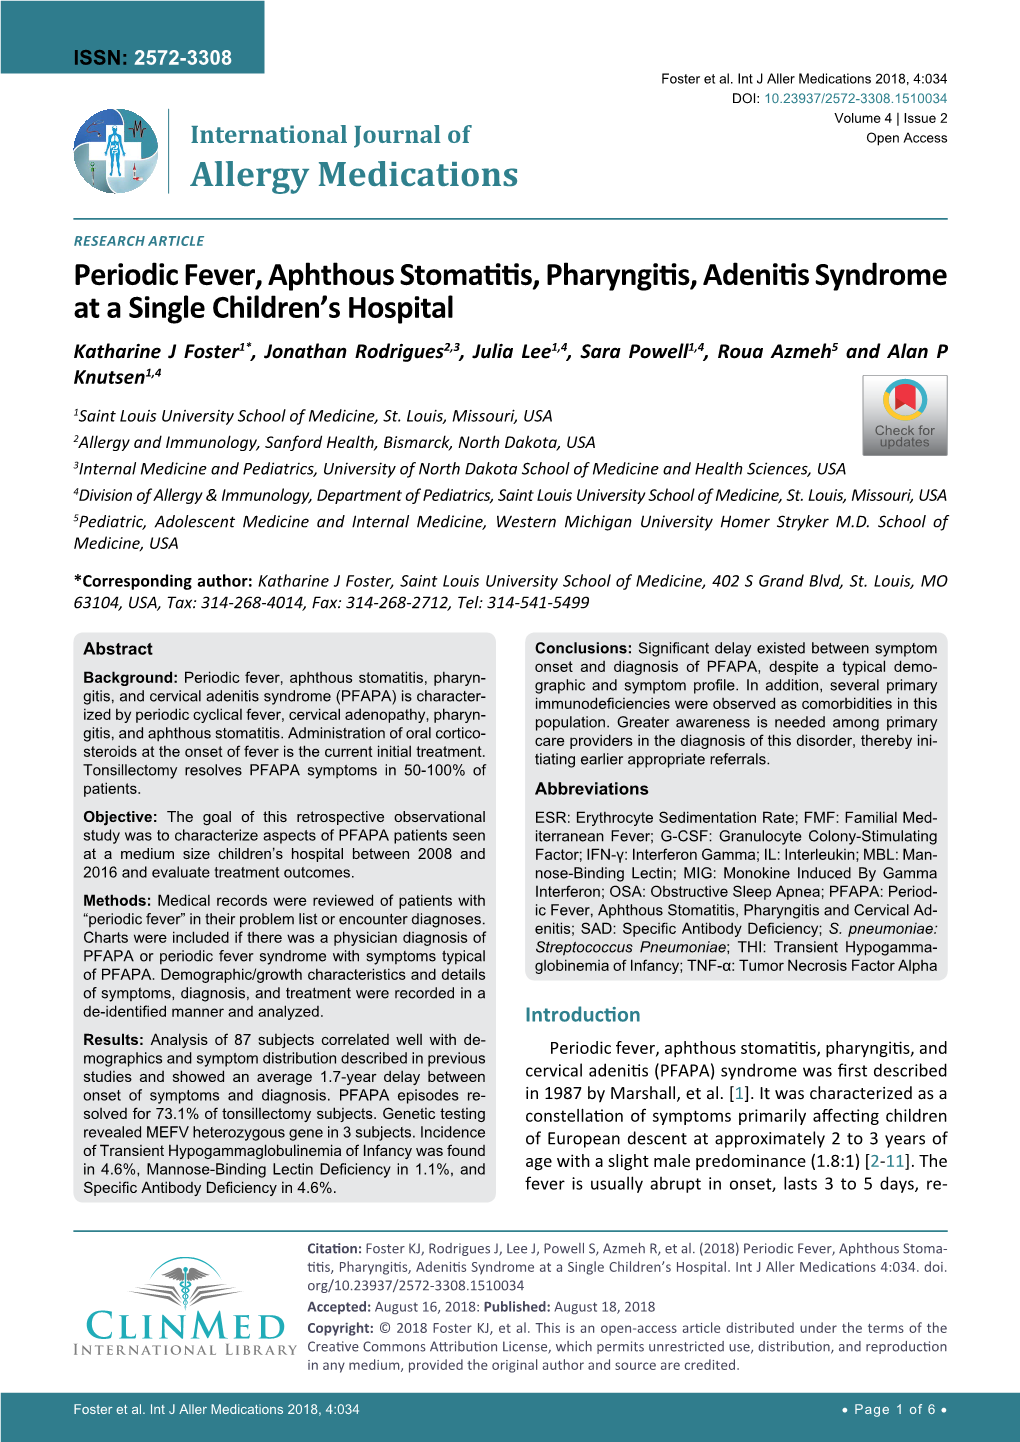 Periodic Fever, Aphthous Stomatitis, Pharyngitis, Adenitis Syndrome at A